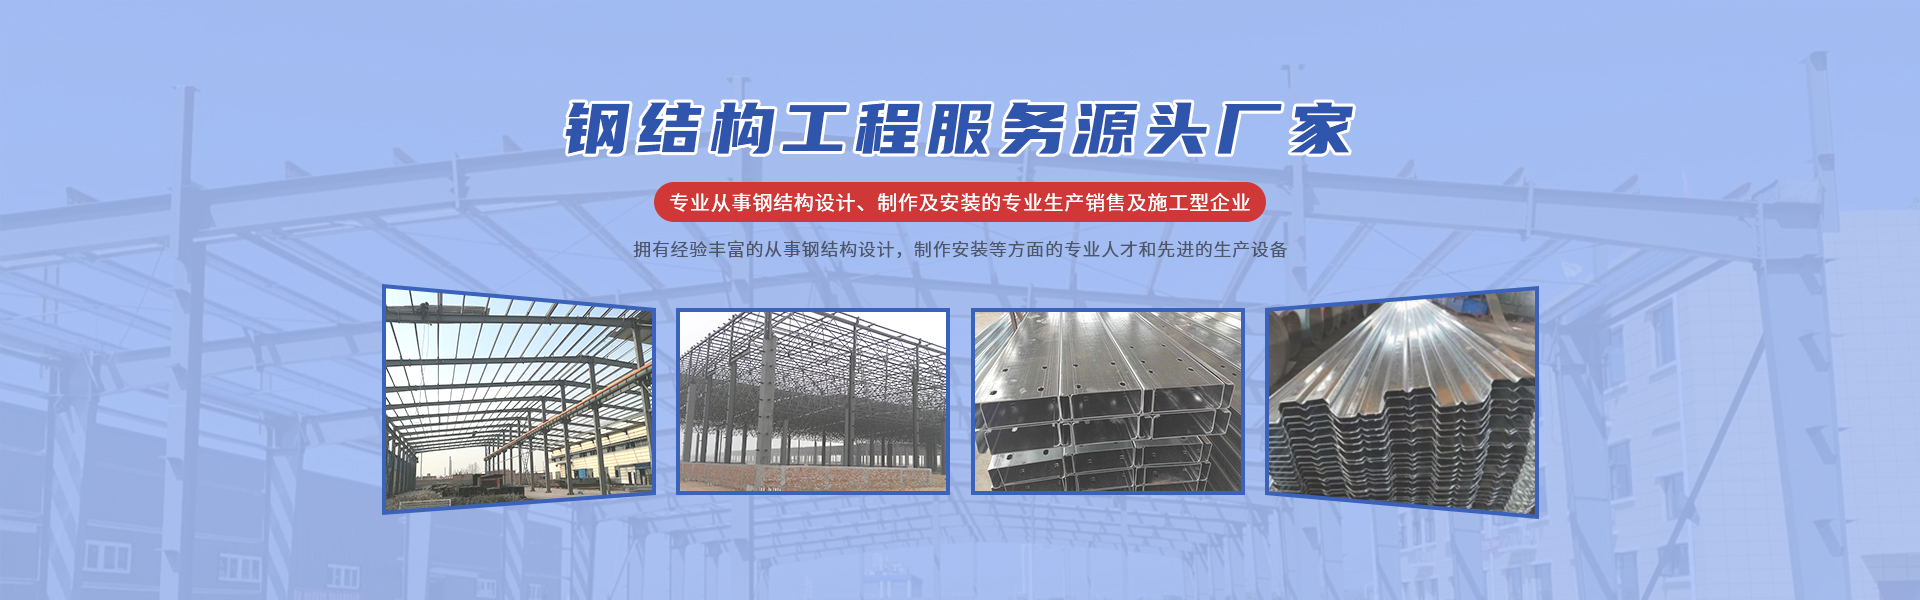 常州鹏志钢结构工程有限公司